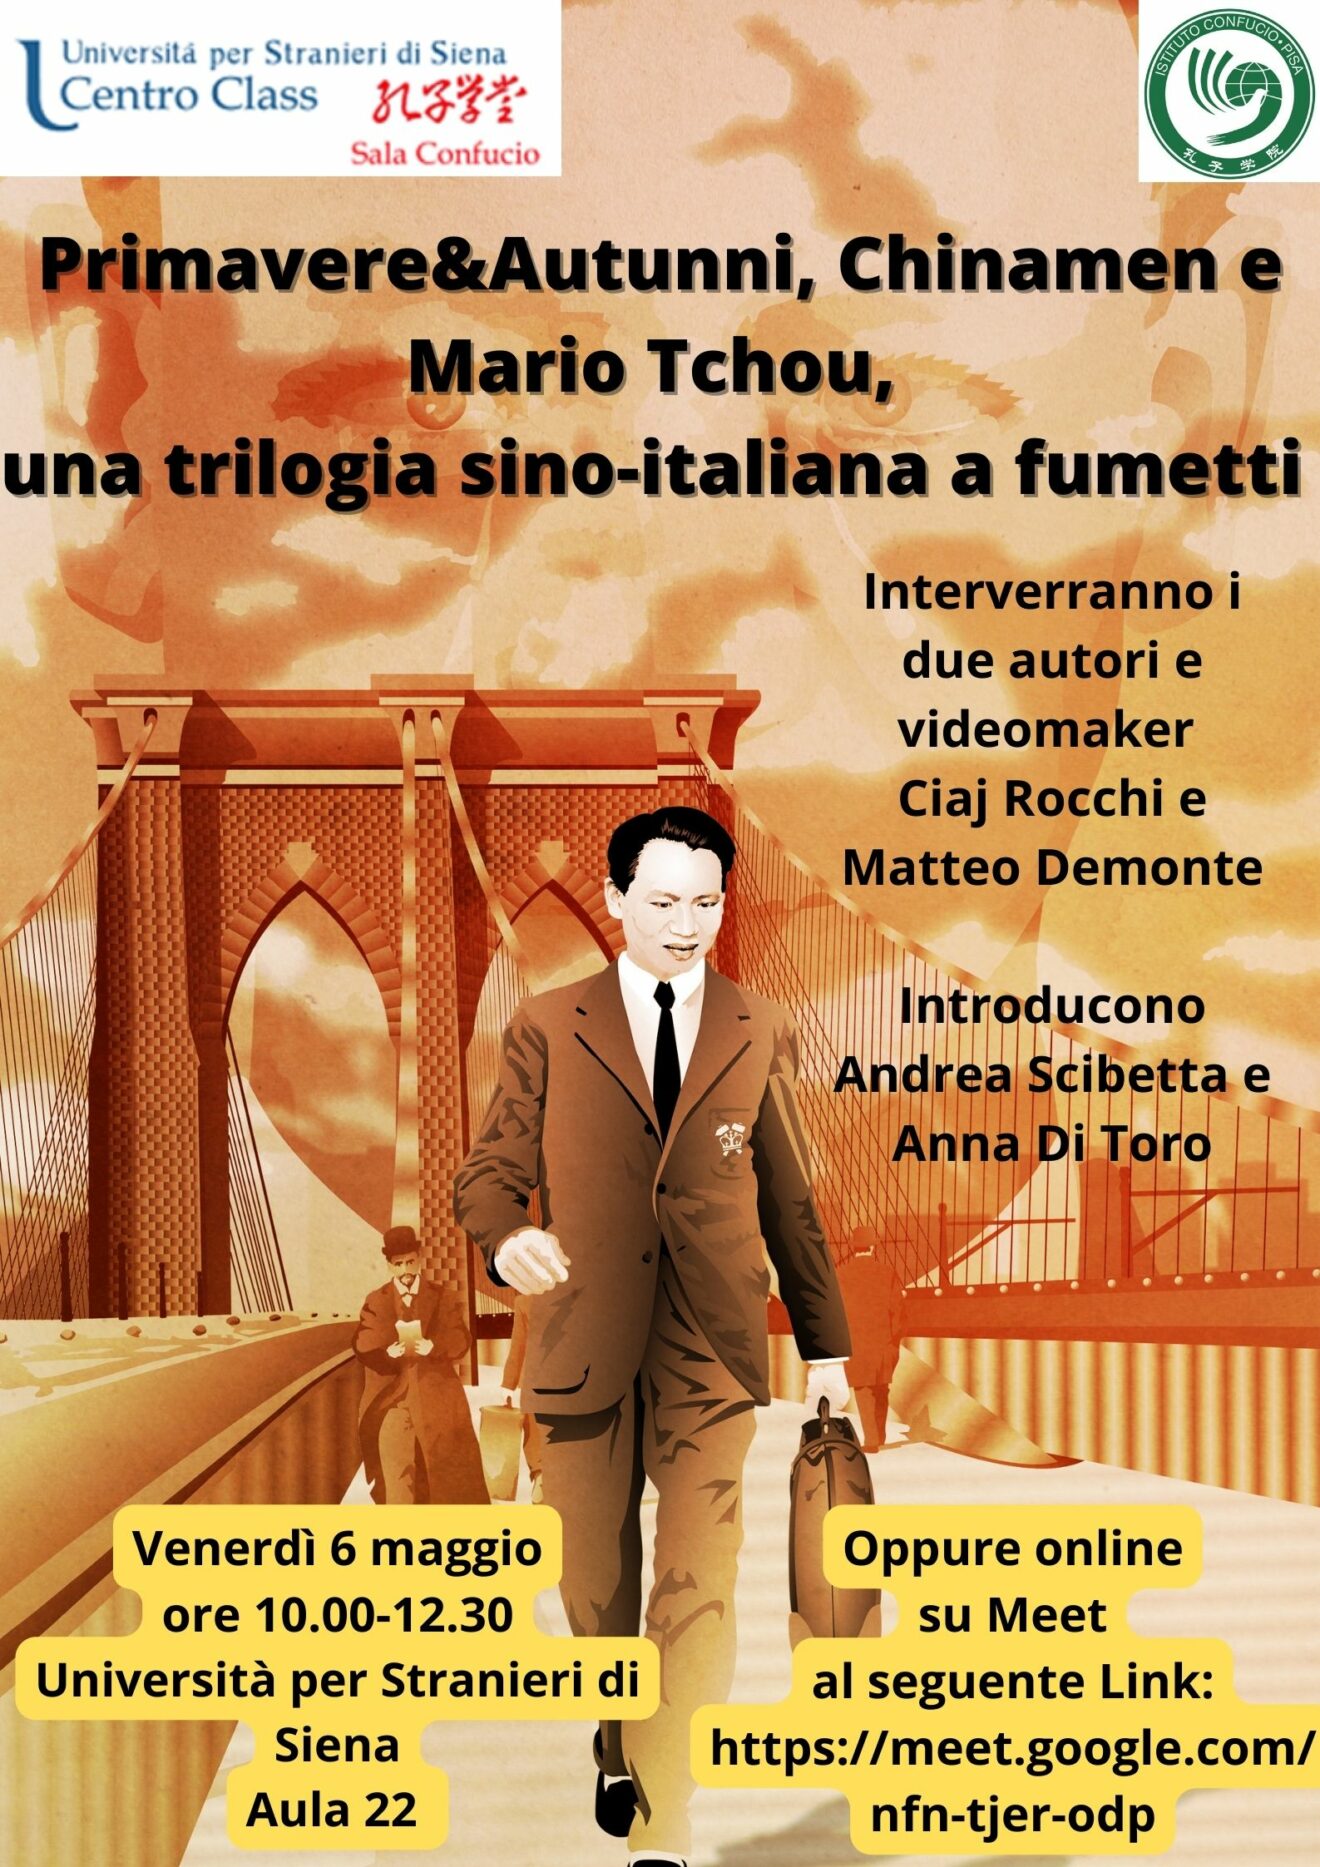 6/5/2022 - Iniziativa ＂Primavere& Autunni, Chinamen e Mario Tchou, una trilogia sino-italiana a fumetti＂, 6 maggio ore 10-12.30 aula 22